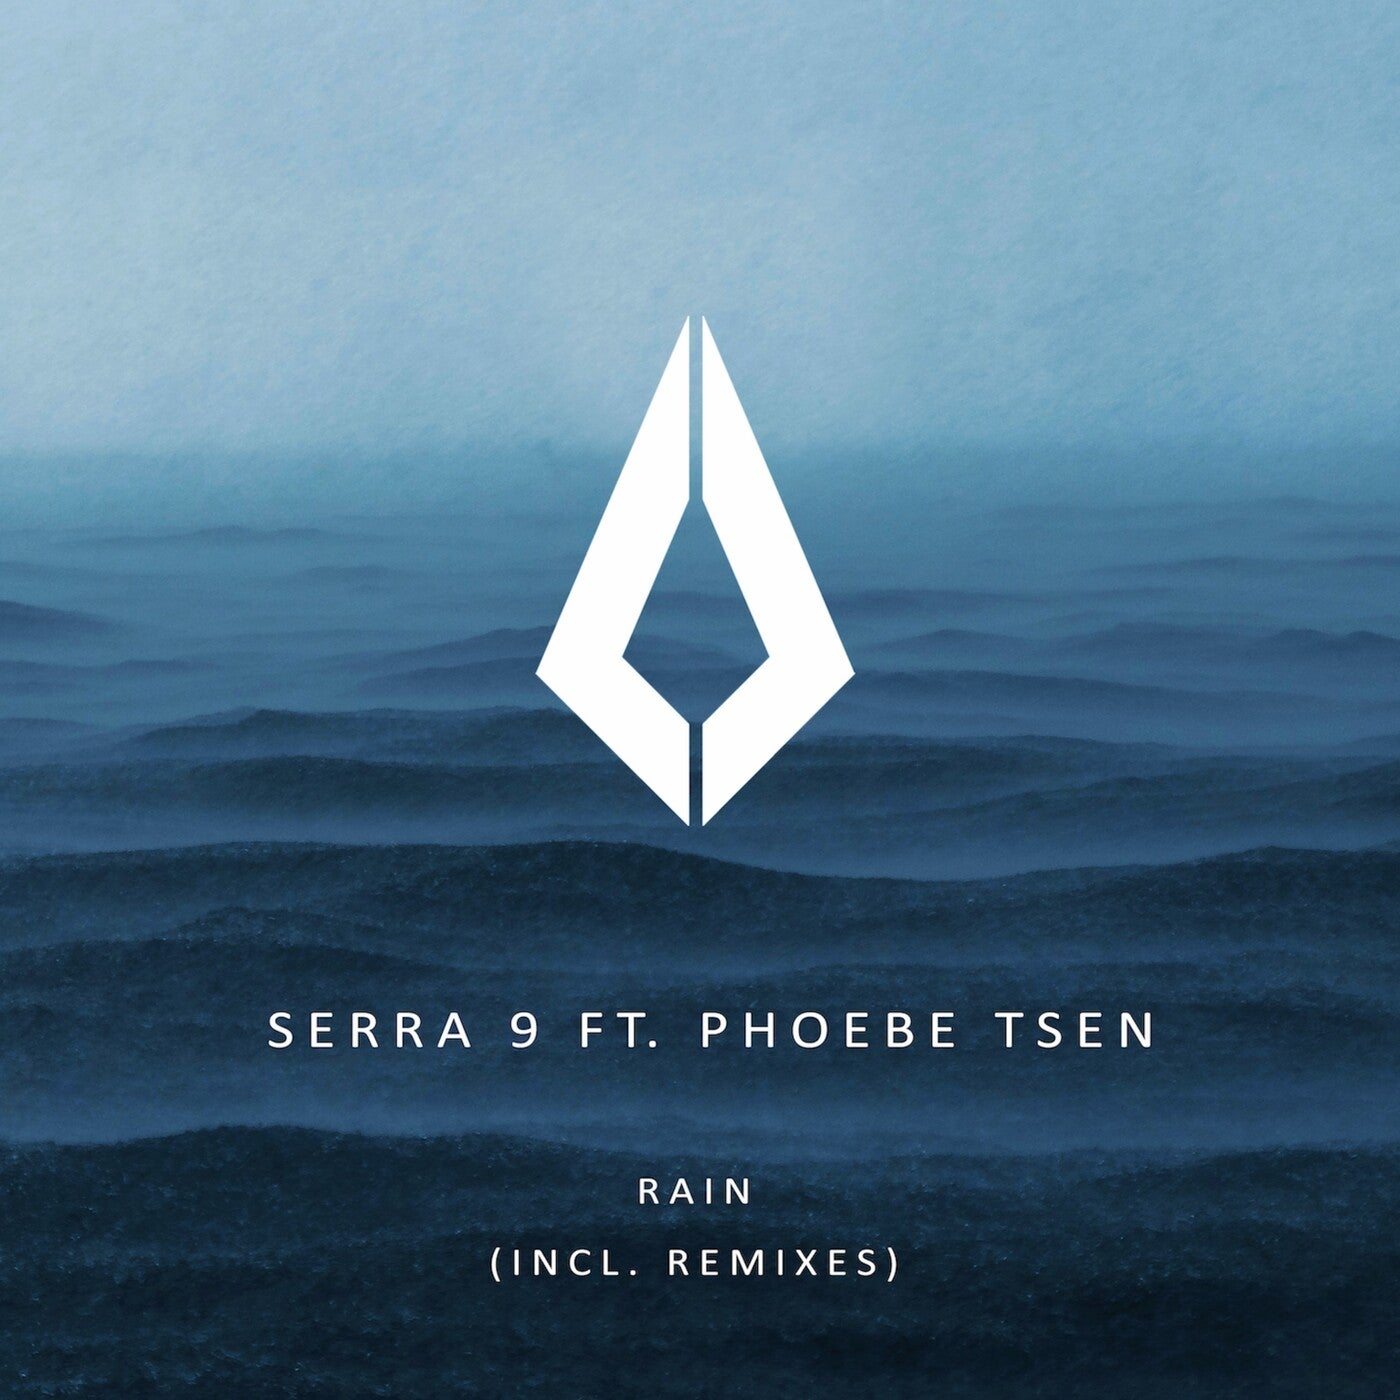 Serra 9 - Rain feat. Phoebe Tsen (Qualysto Extended Remix)